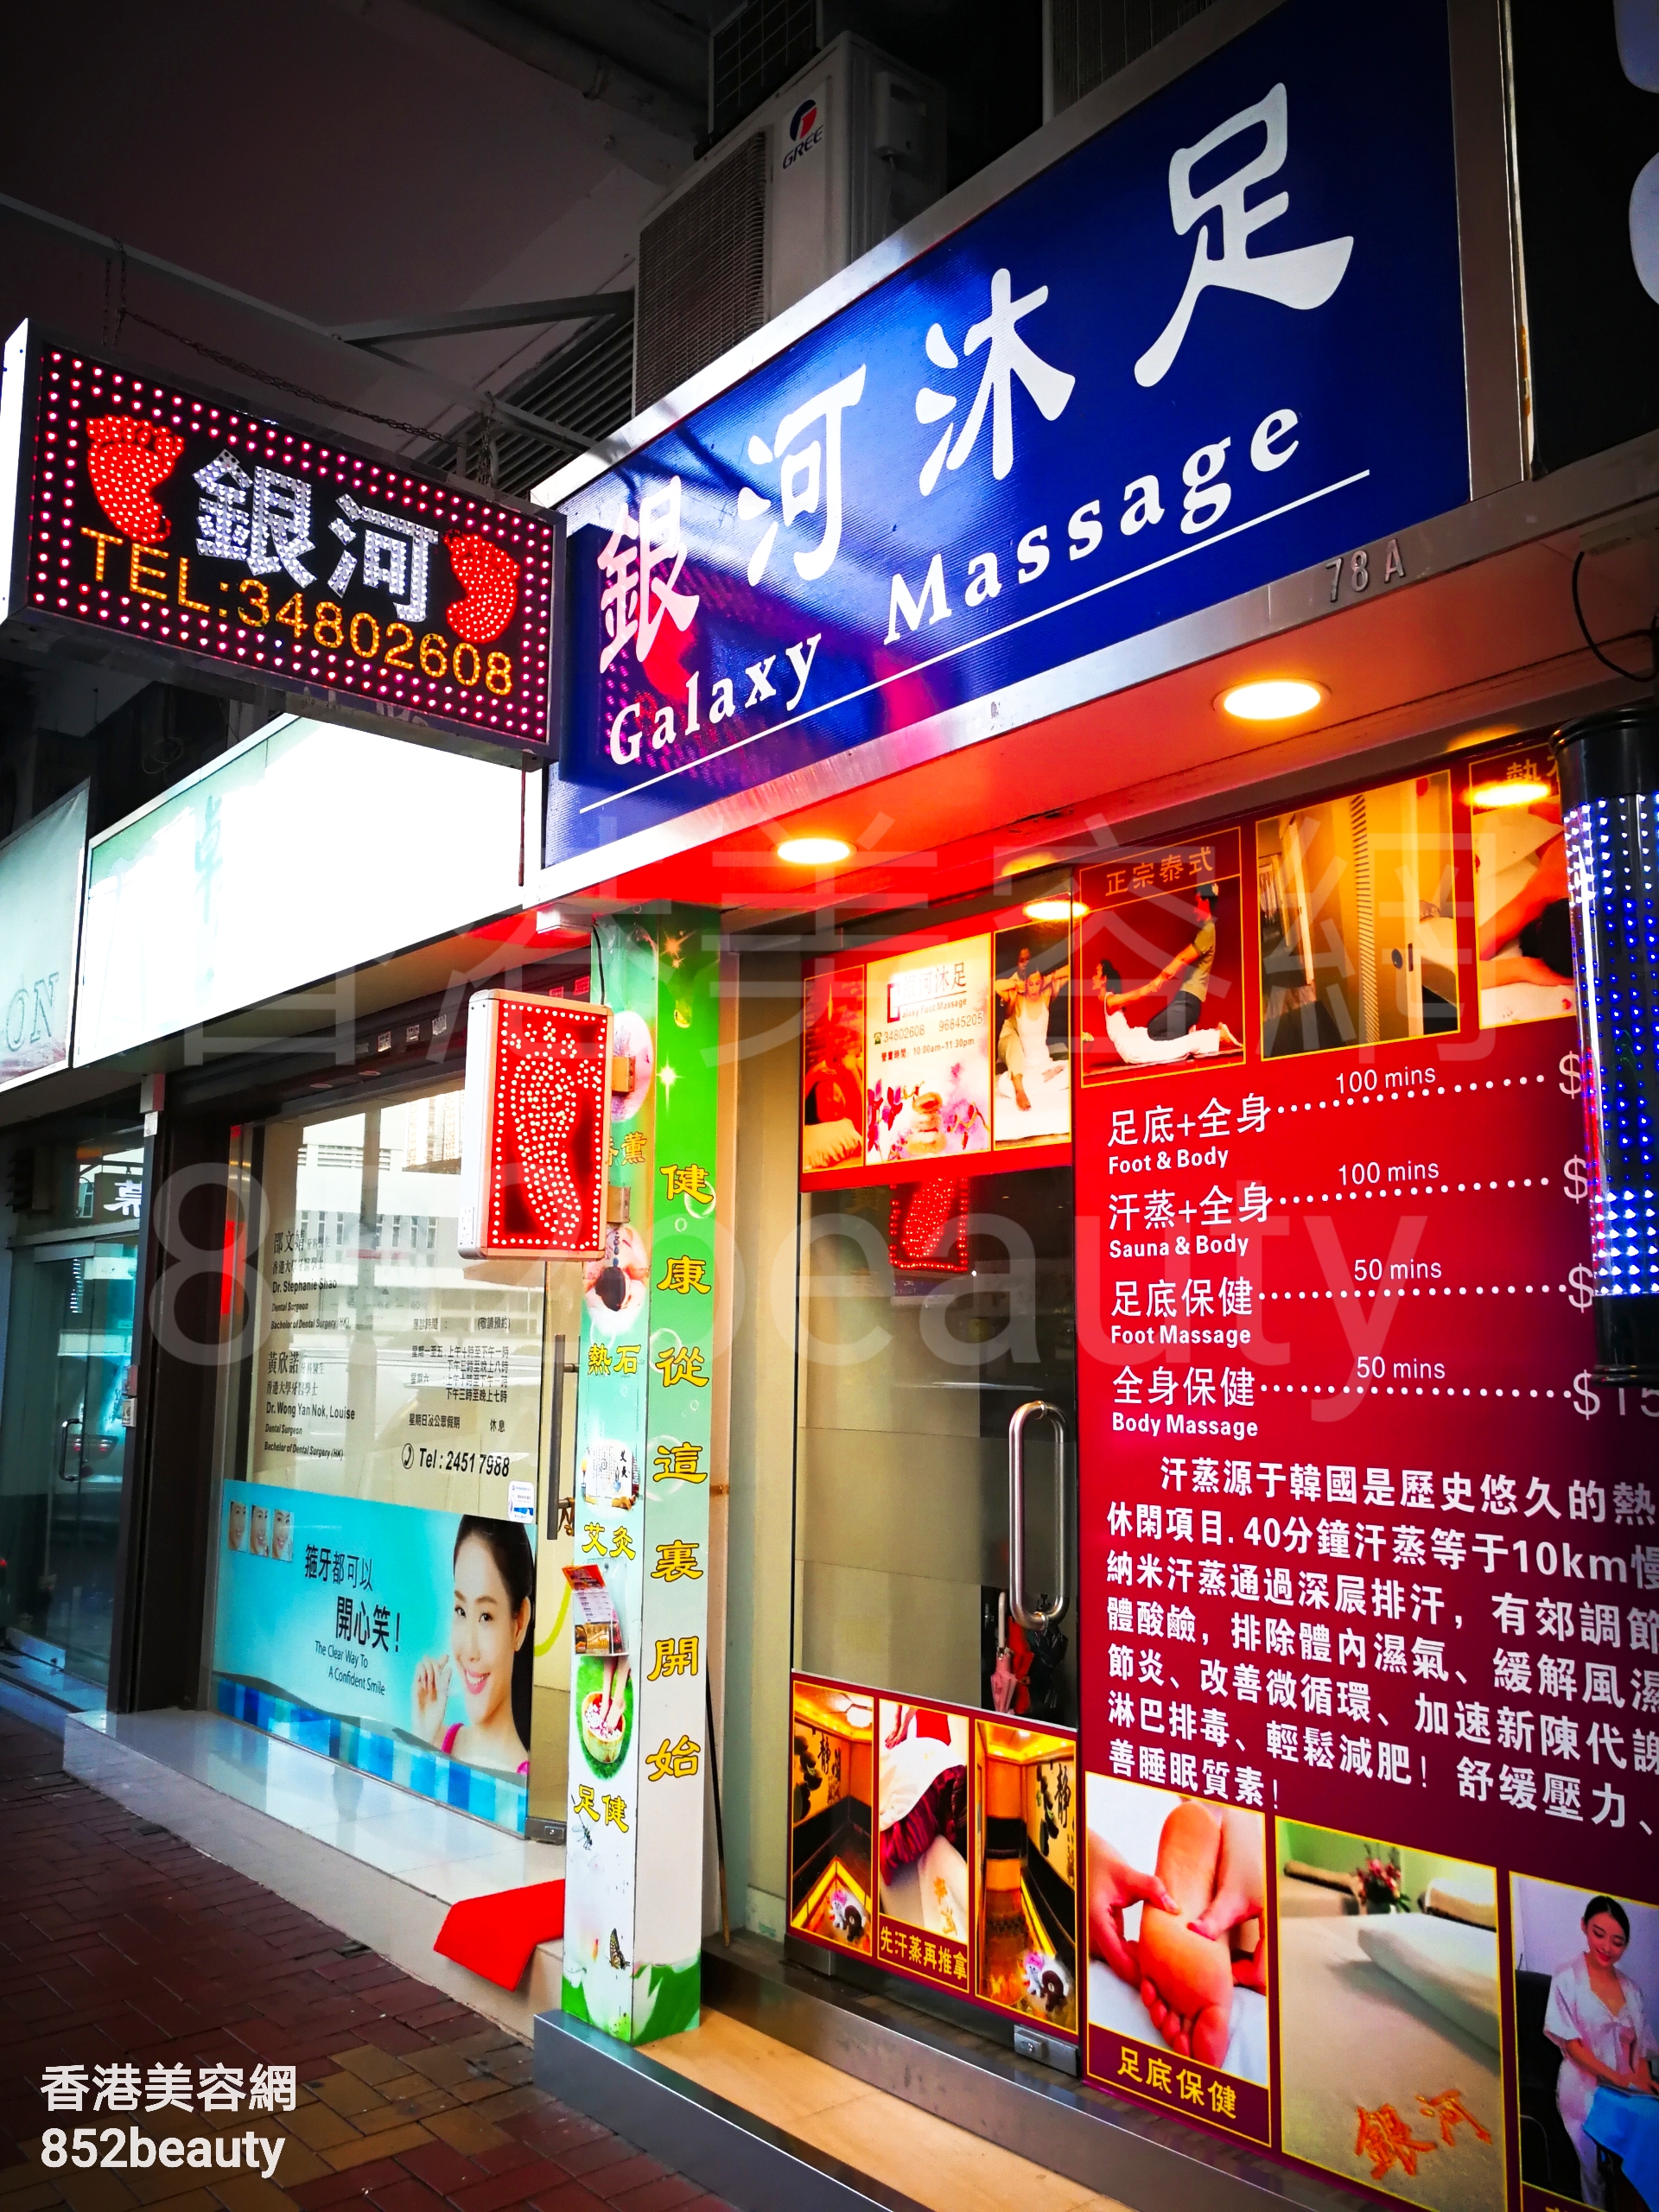 香港美容網 Hong Kong Beauty Salon 美容院 / 美容師: 銀河沐足Galaxy Massage